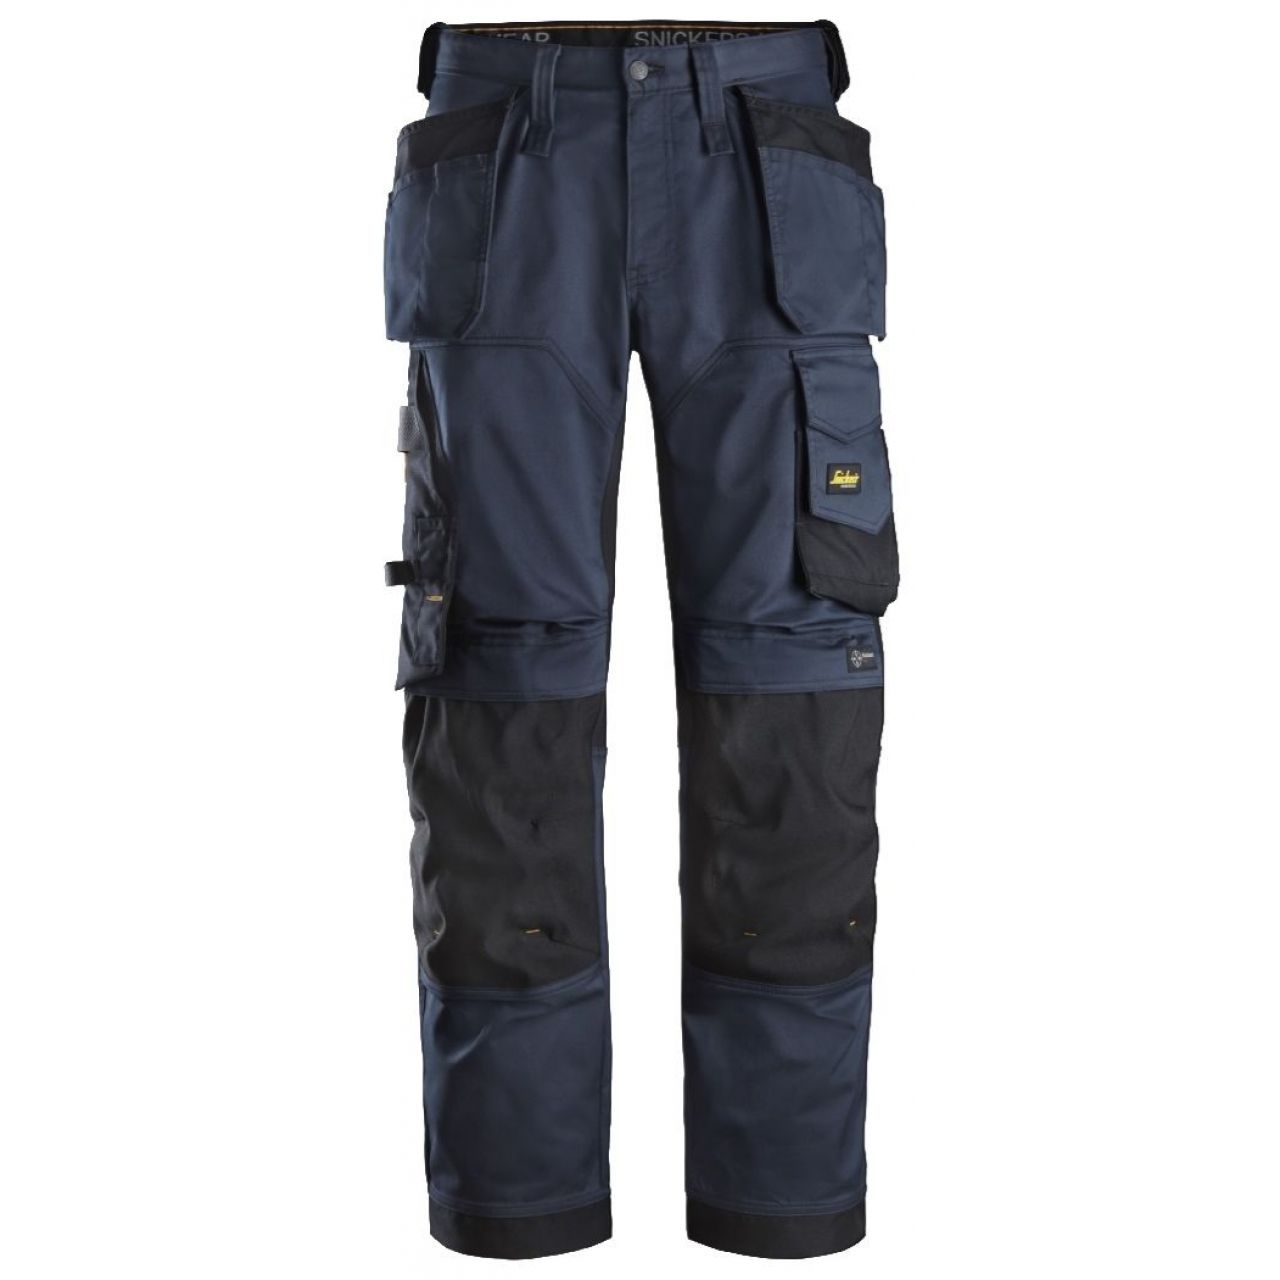 Pantalon elastico ajuste holgado AllroundWork bolsillos flotantes azul marino-negro talla 046